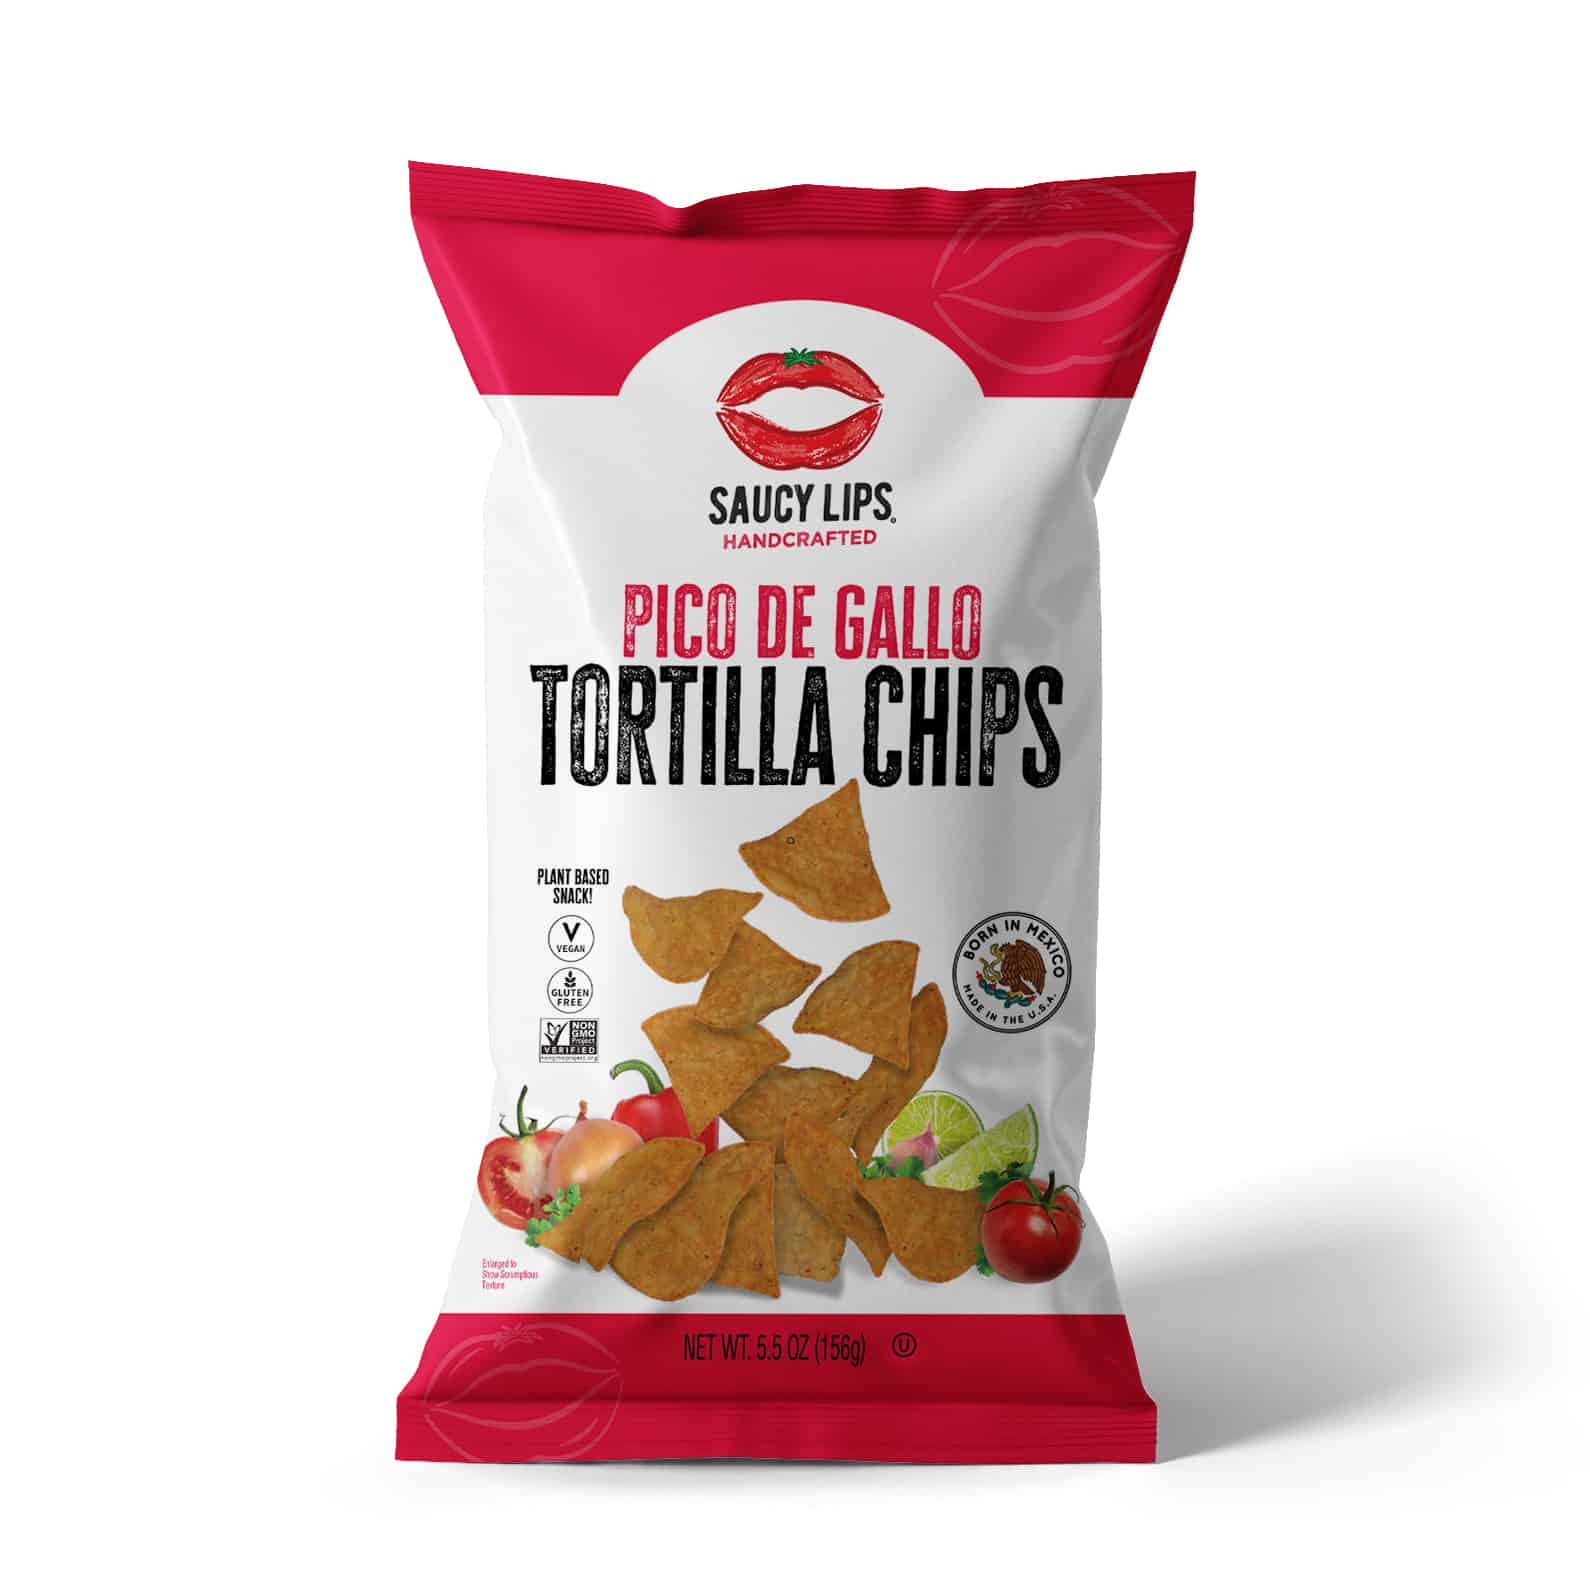 Saucy Lips Pico De Gallo Tortilla Chip 12 units per case